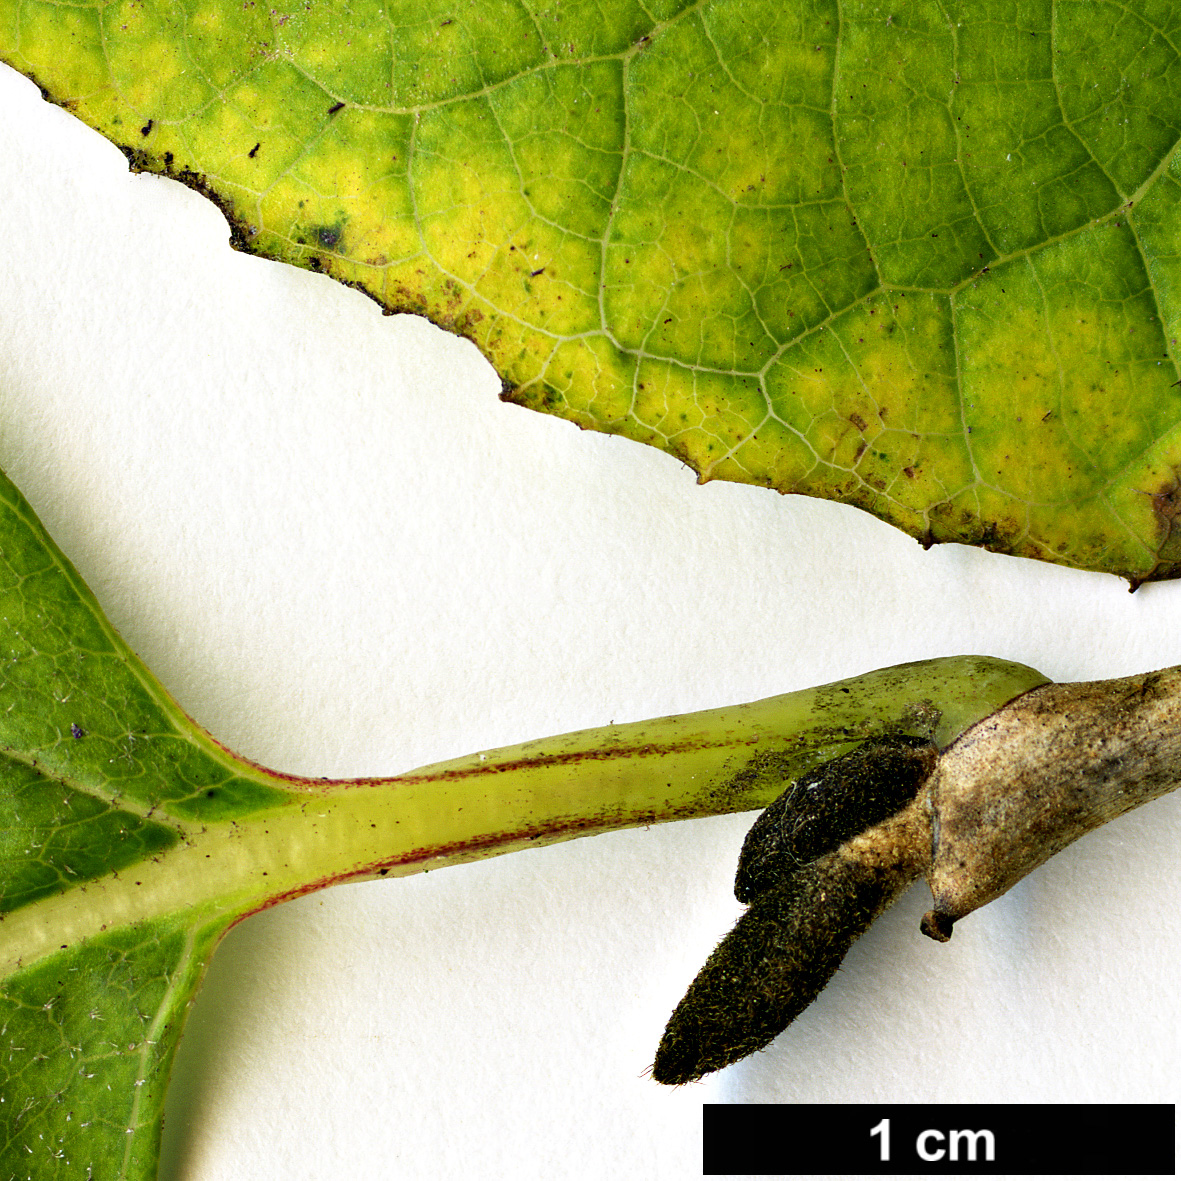 High resolution image: Family: Styracaceae - Genus: Styrax - Taxon: hemsleyanus